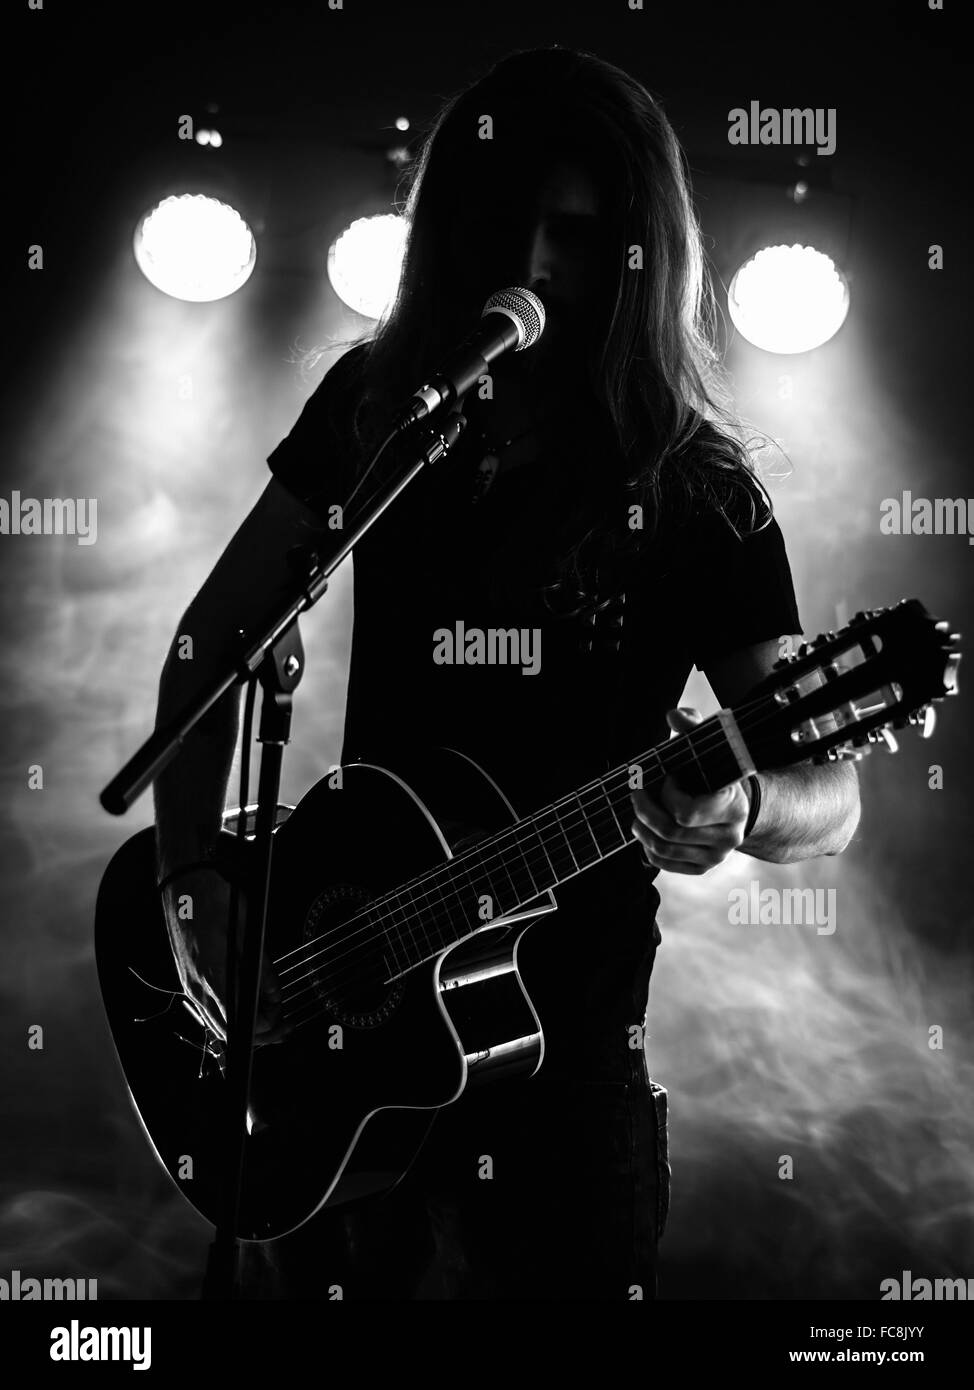 Foto von hinterleuchteten junger Mann mit langen Haaren in der Silhouette eine akustische Gitarre auf der Bühne spielen. Stockfoto